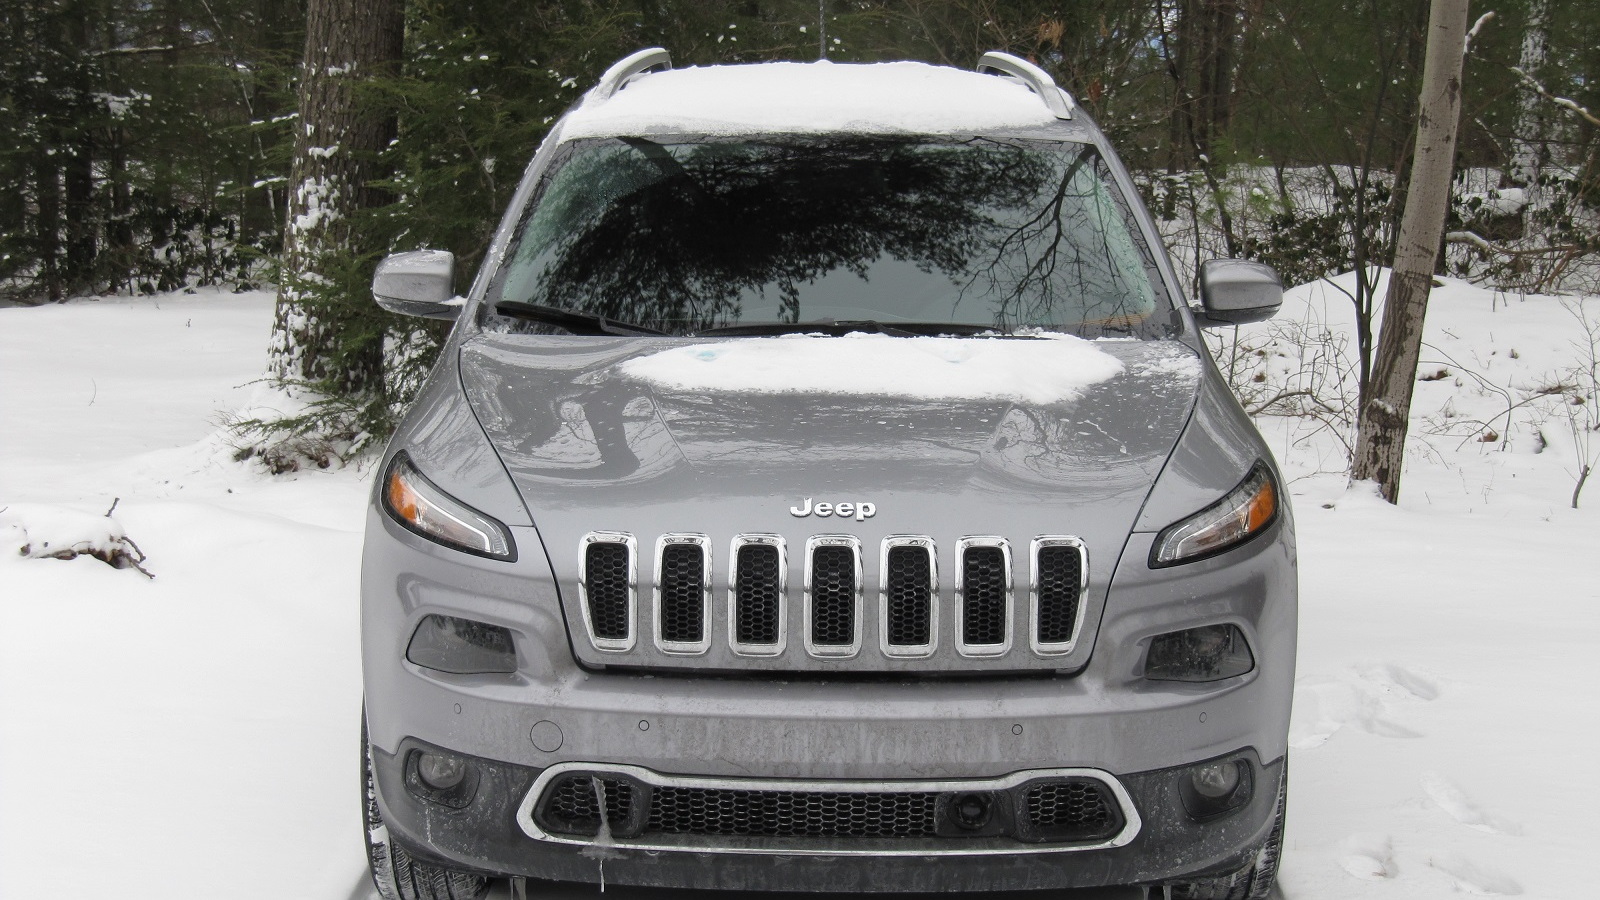 2014 Jeep Cherokee Limited 4x4, Catskill Mountains, NY, Jan 2014